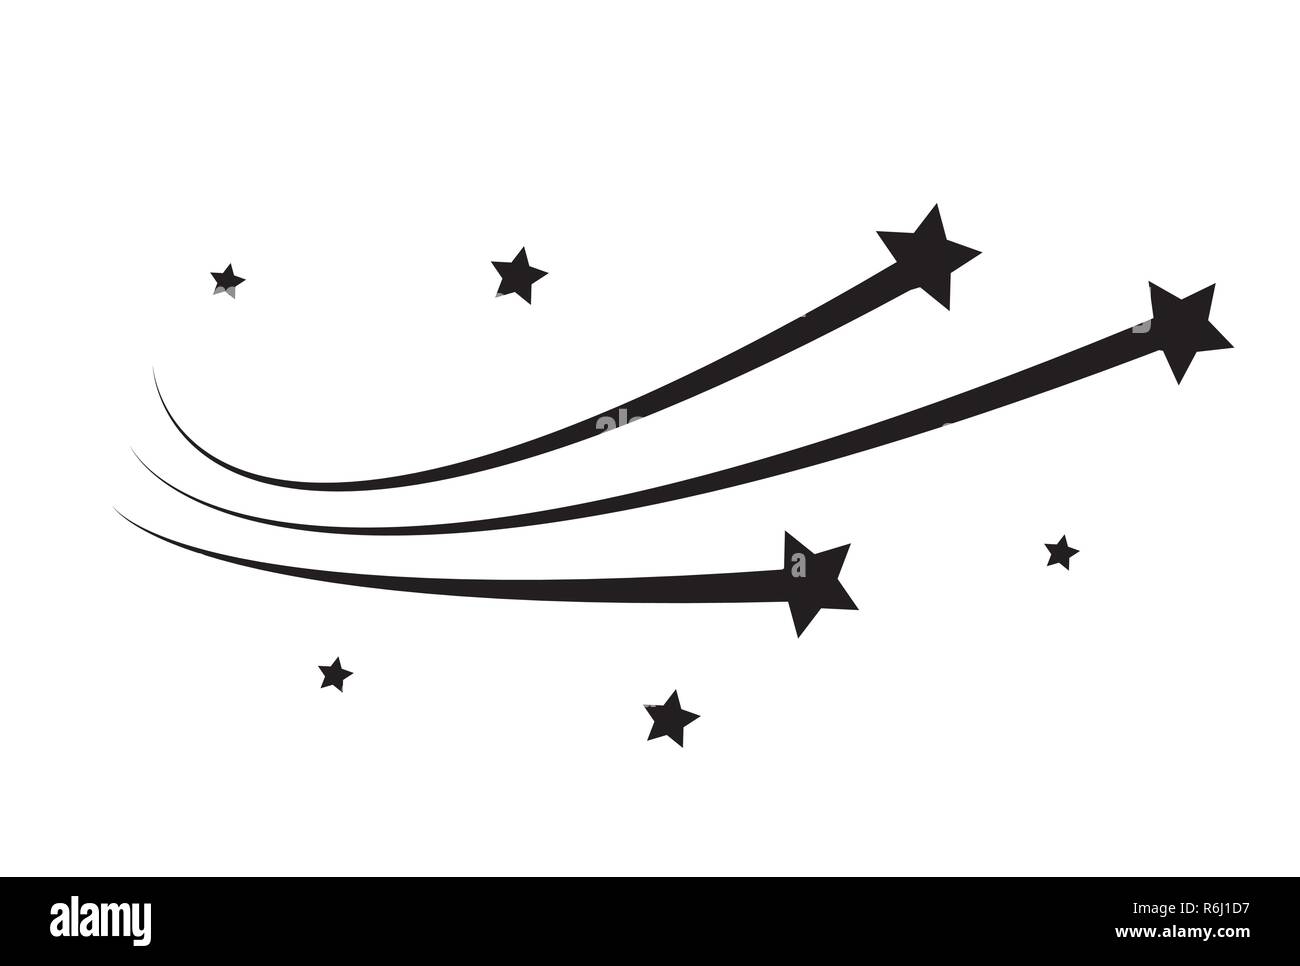 Star trail comet trace des lignes sur fond blanc. Illustration vecteur EPS10 Illustration de Vecteur